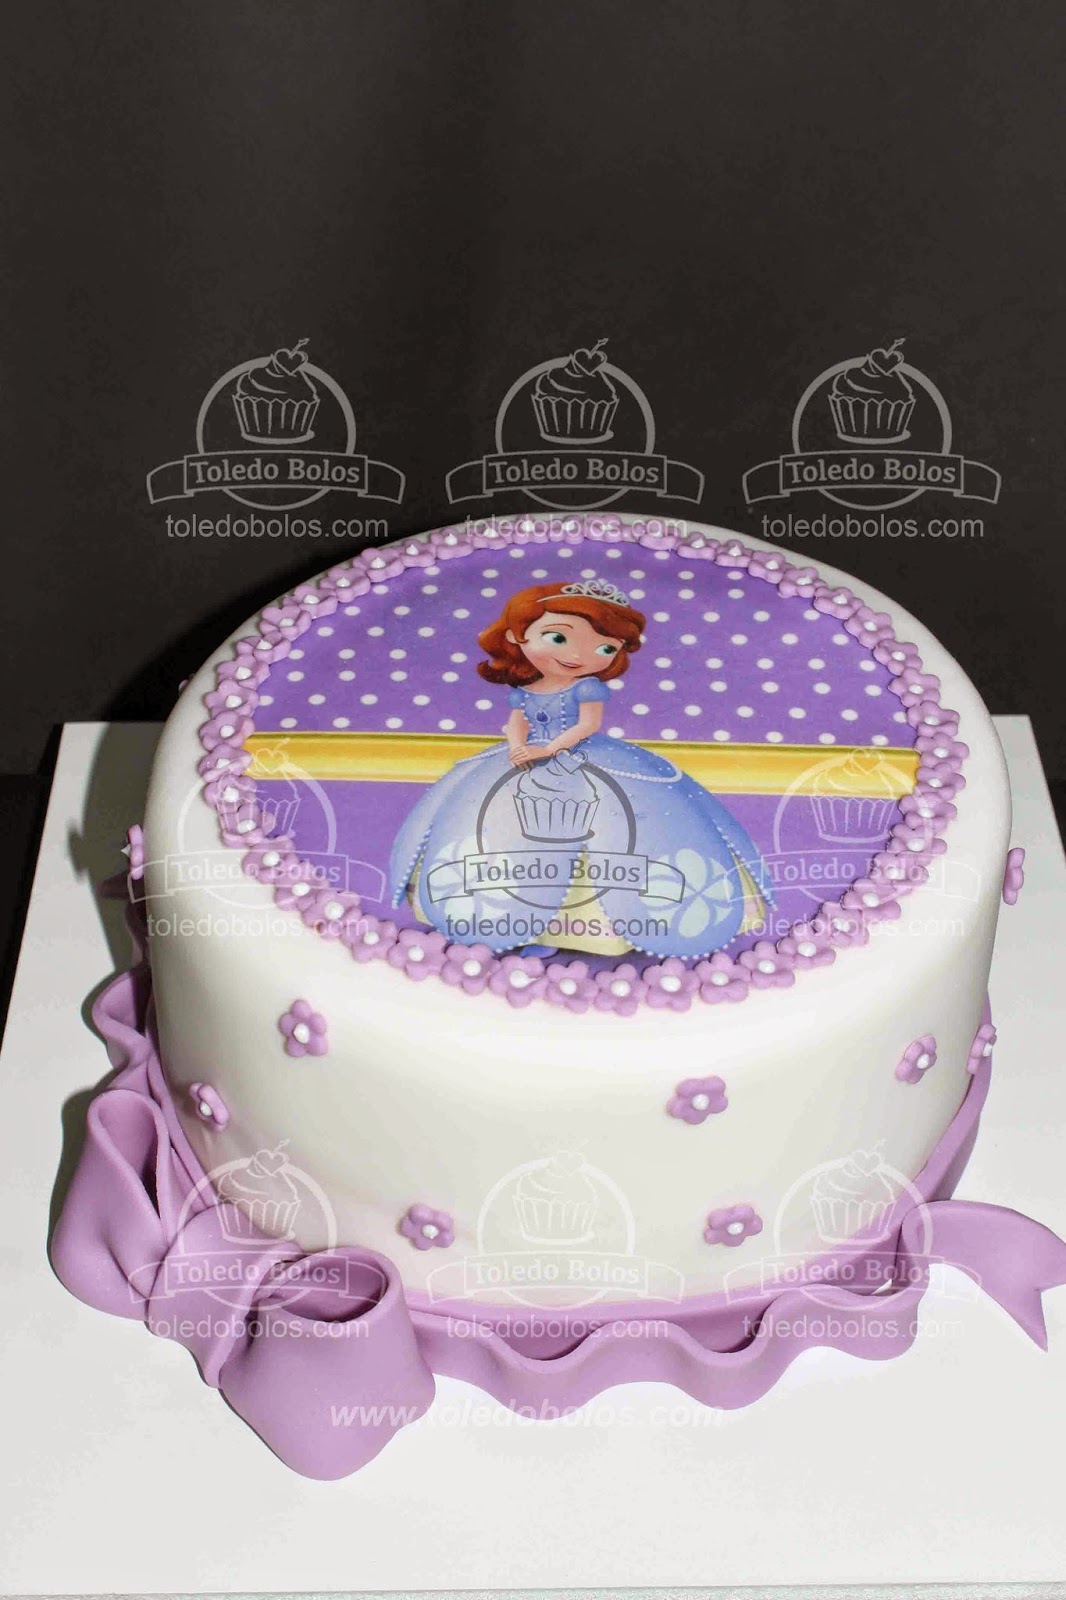 Toledo Bolos - Bolos decorados, Cupcakes e Doces personalizados para sua  festa no Rio de Janeiro: Bolo Princesa Sofia